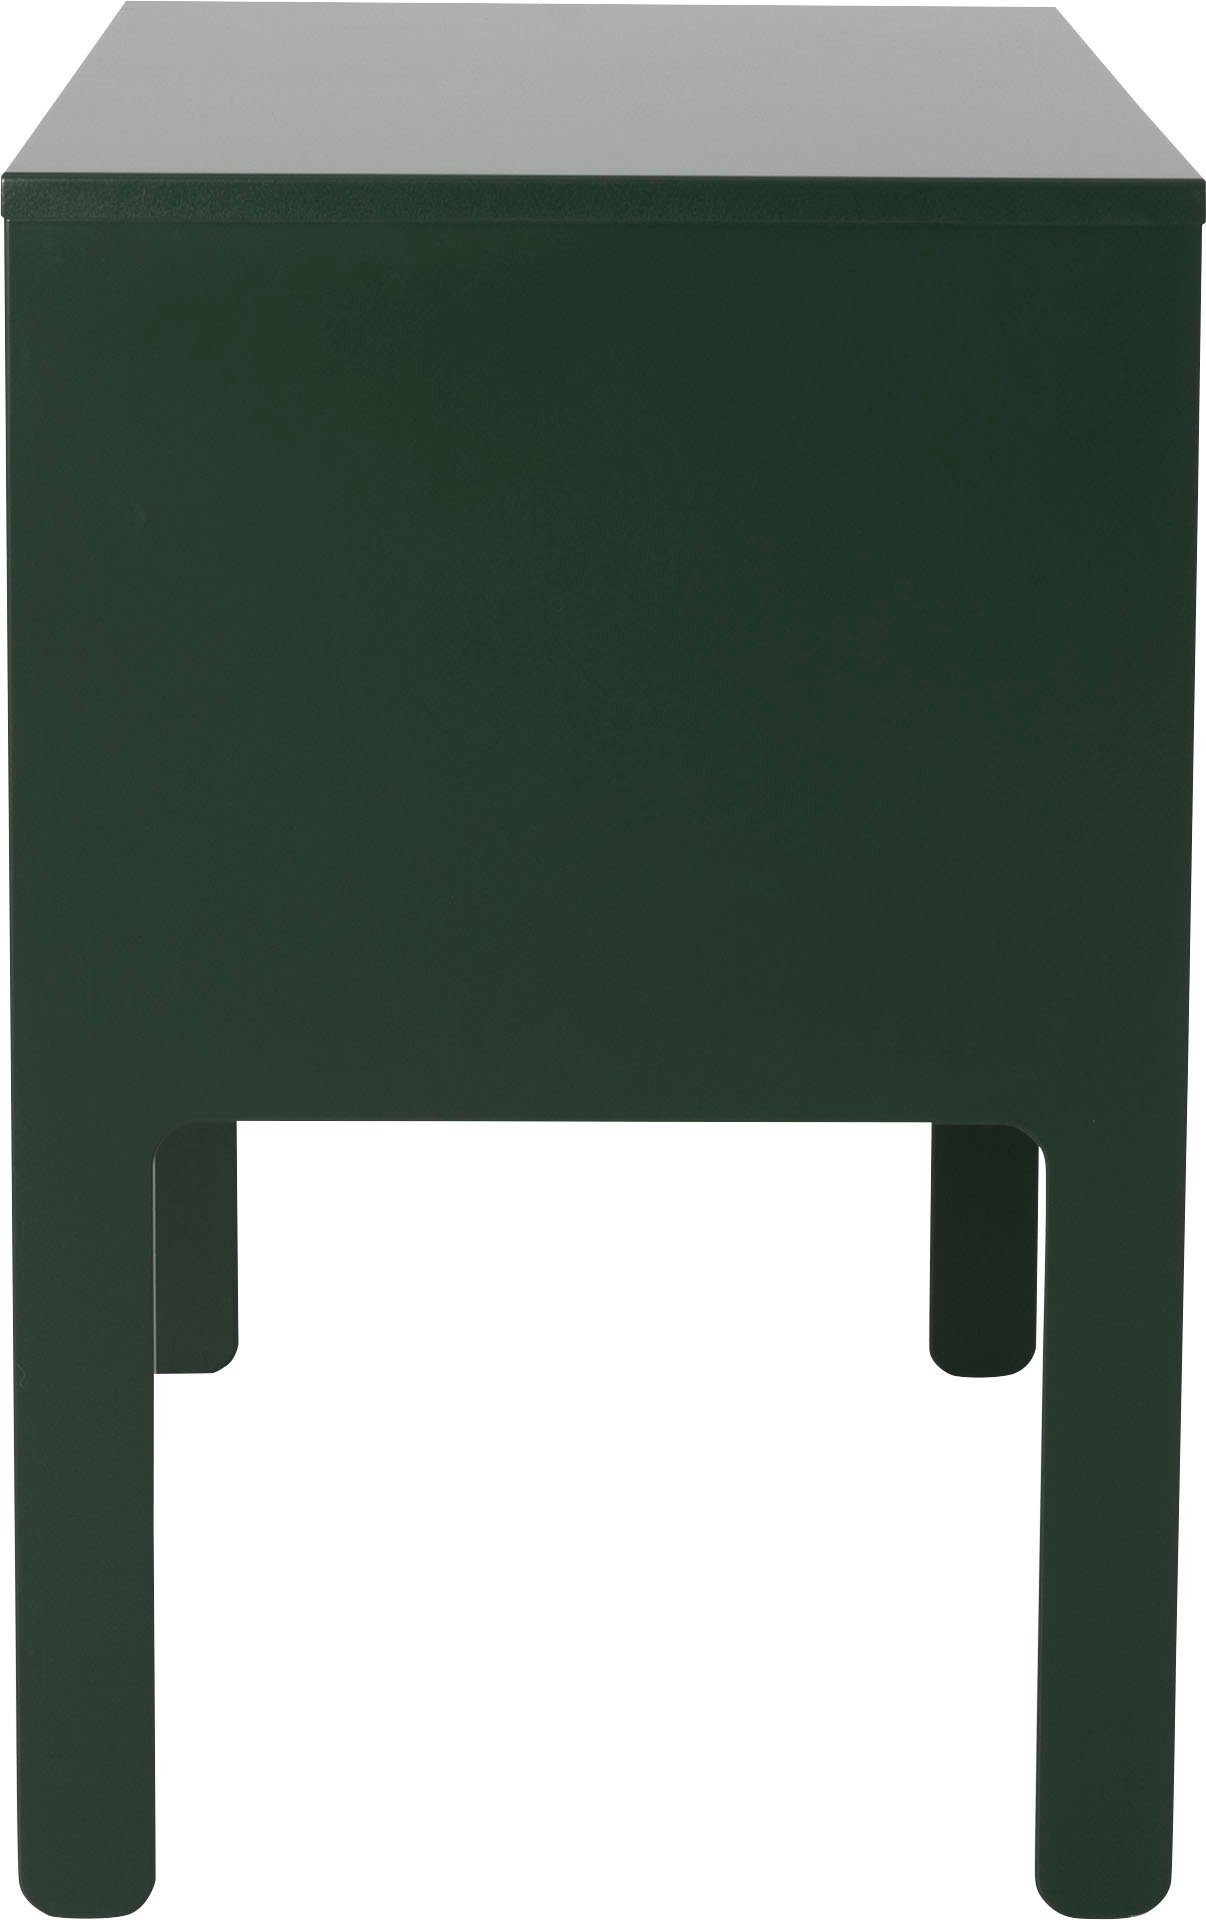 1 Schublade, By Olivier Toulouse von UNO, green Tenzo Tenzo Design mit Schreibtisch forest